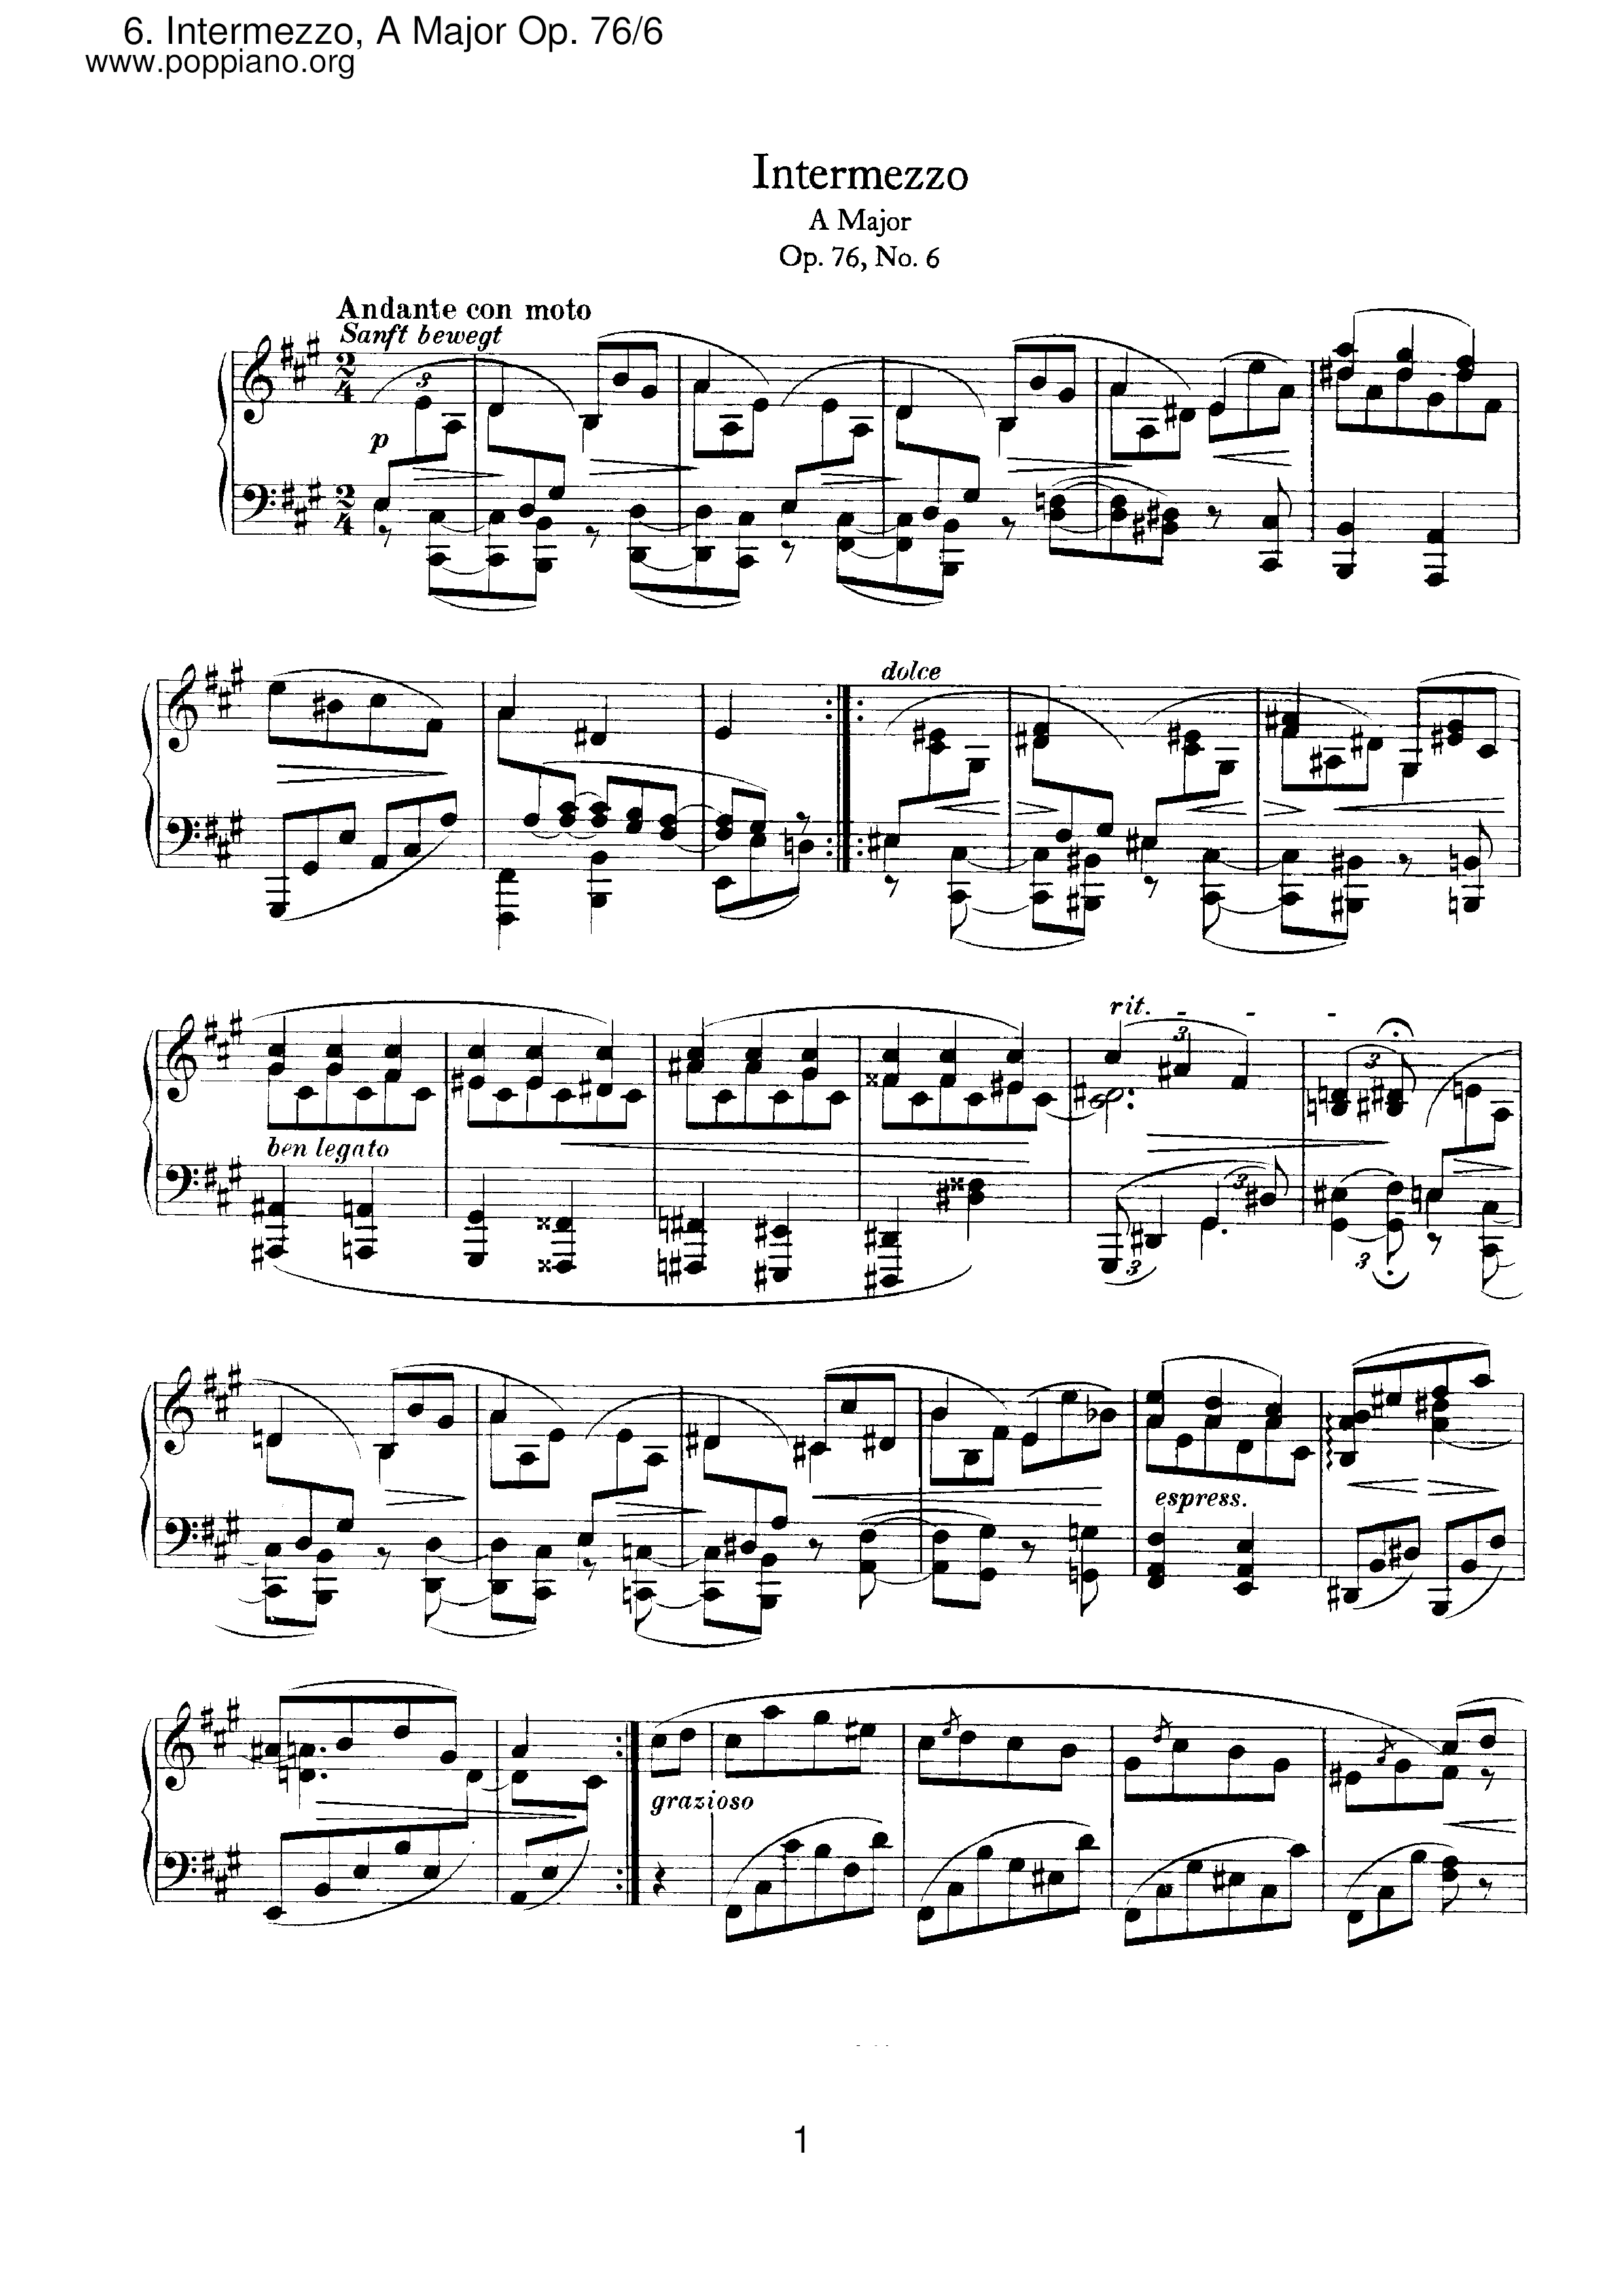 Intermezzo No. 6 in A Major, Op. 76 - Andante con moto琴谱